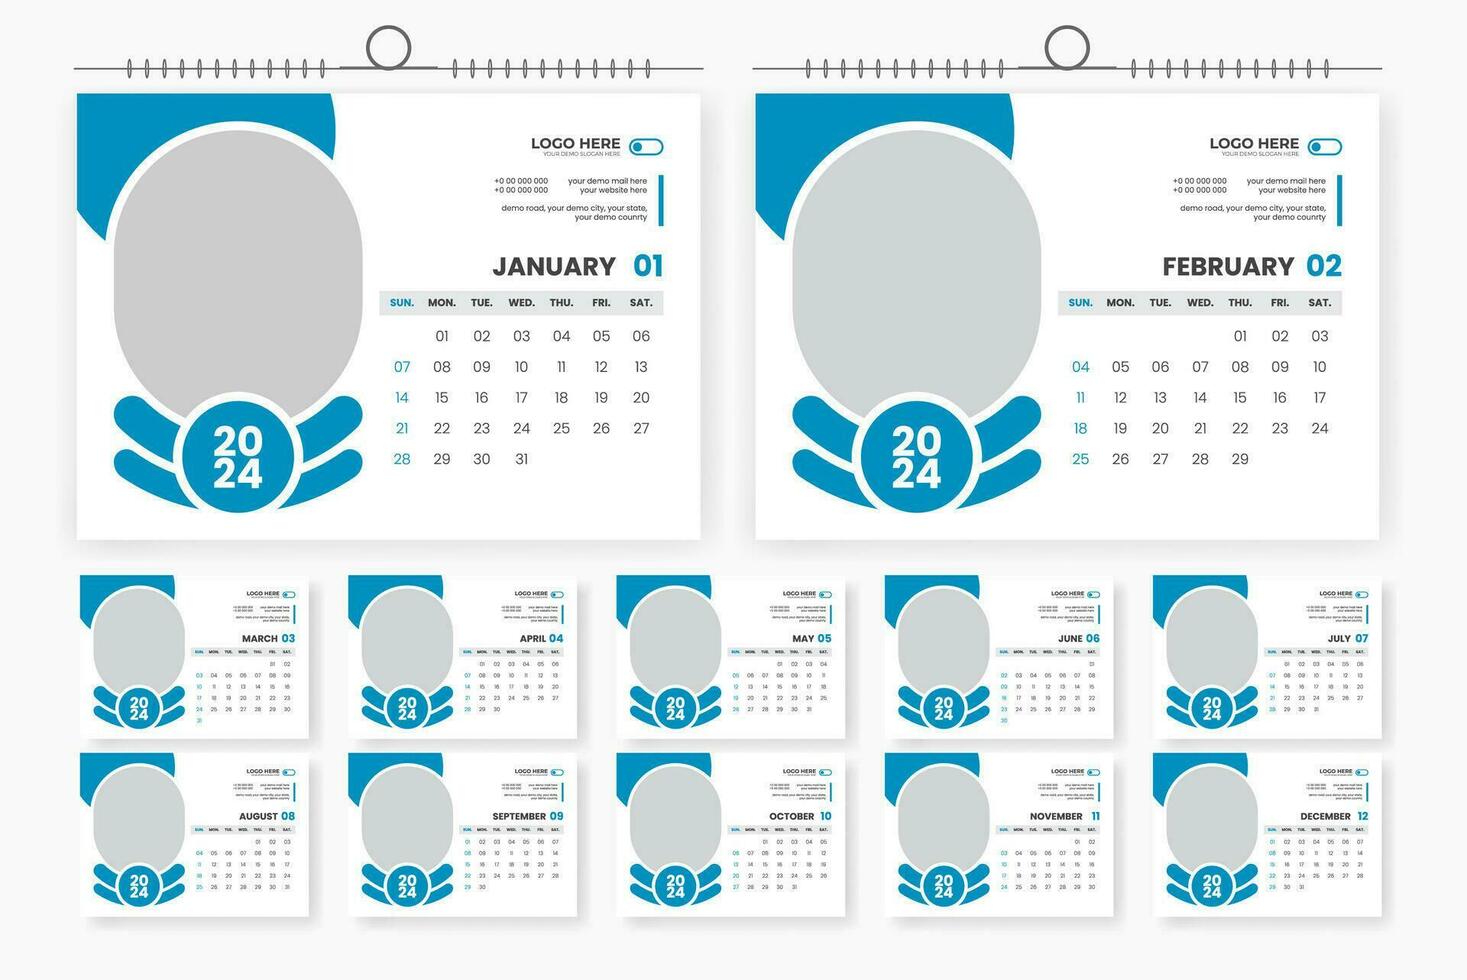 2024 bureau kalender ontwerp 12 bladzijde kalender sjabloon vector